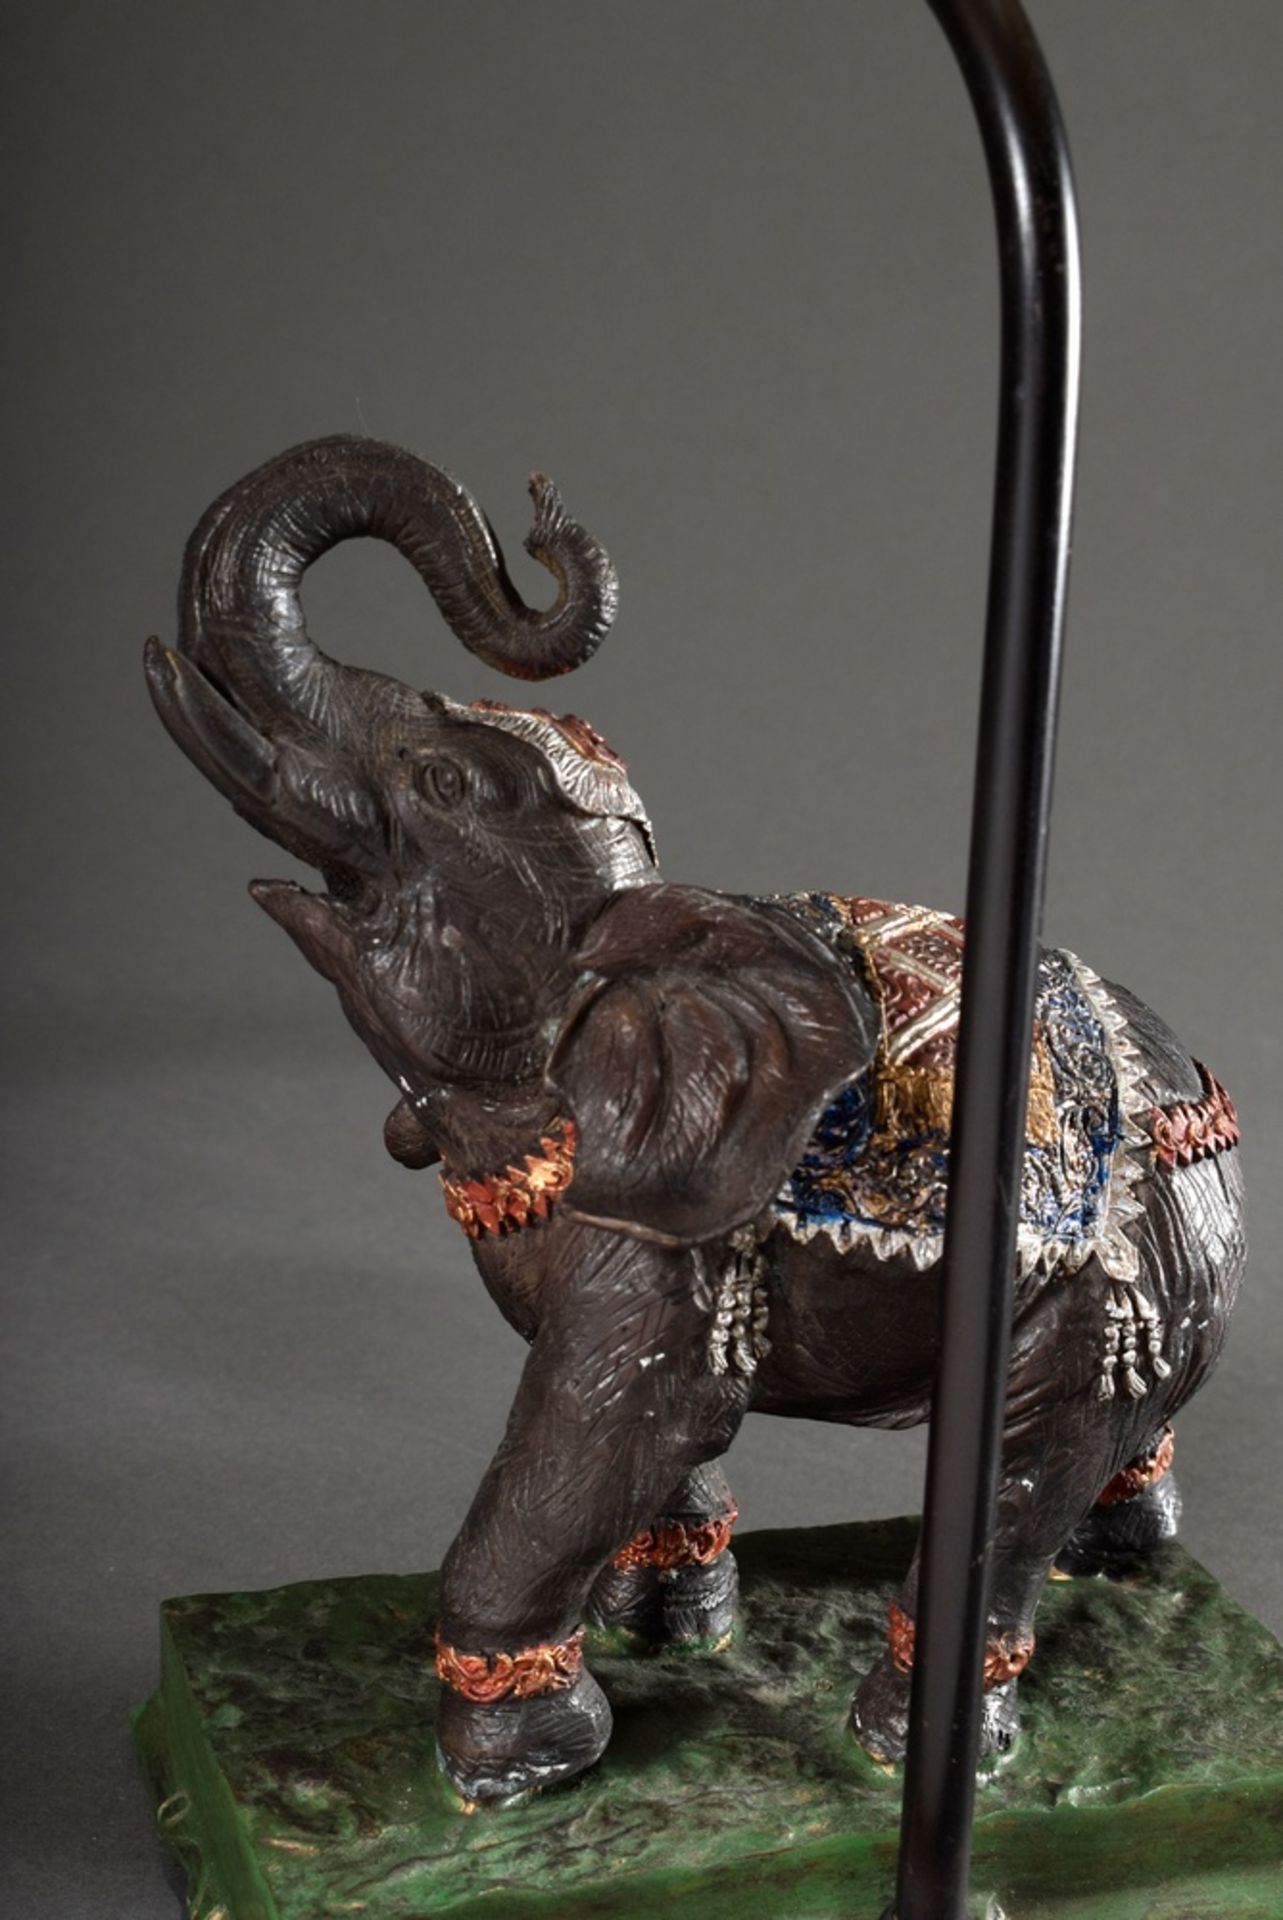 Moderne Tischlampe "Elefant", farbig bemaltes Metall, schwarz-weiß gestreifter Schirm, H. 54,5cm - Bild 3 aus 7